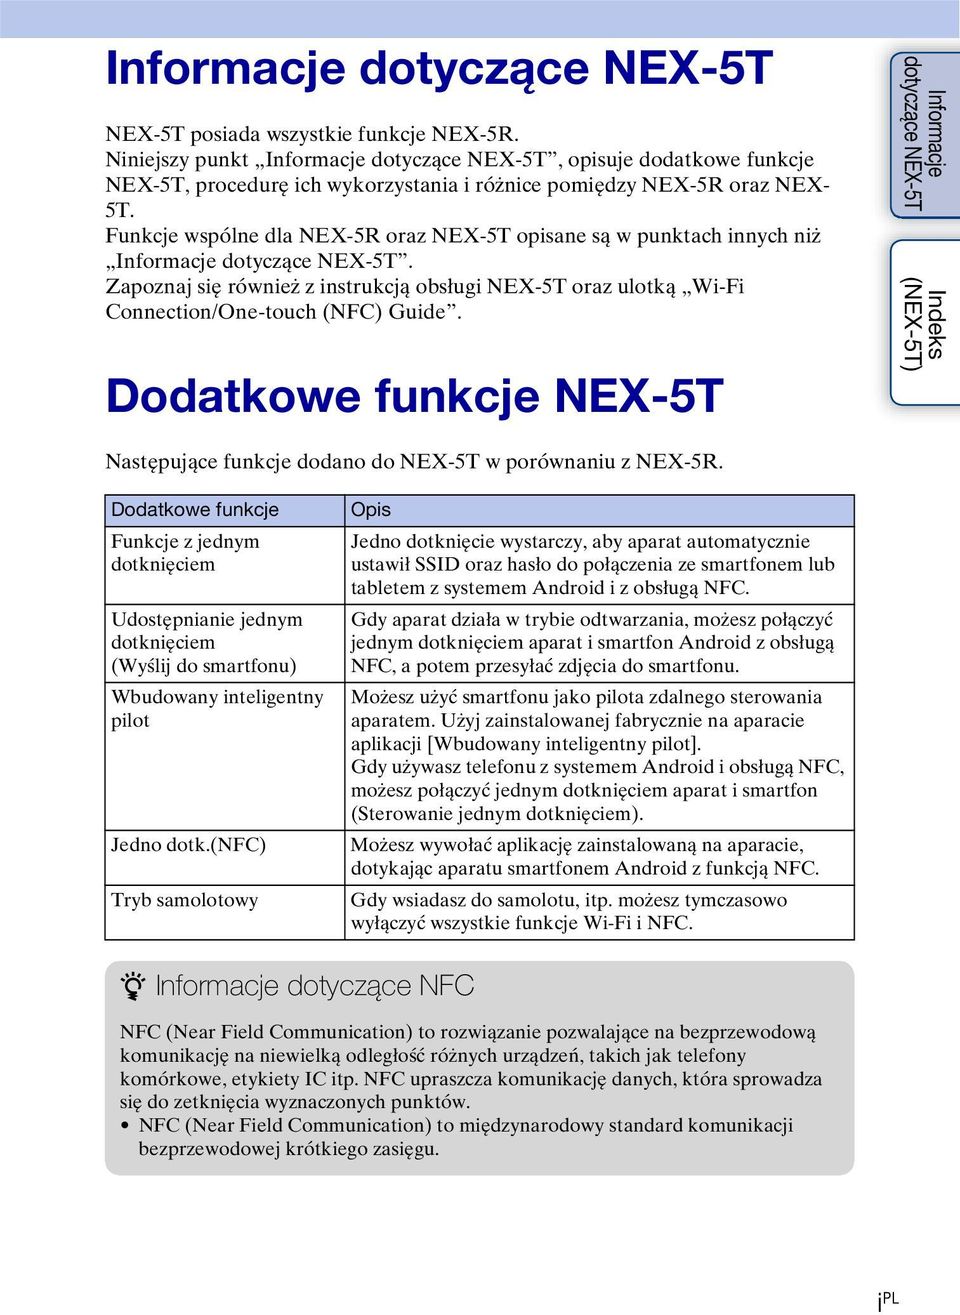 Funkcje wspólne dla NEX-5R oraz NEX-5T opisane są w punktach innych niż Informacje dotyczące NEX-5T.